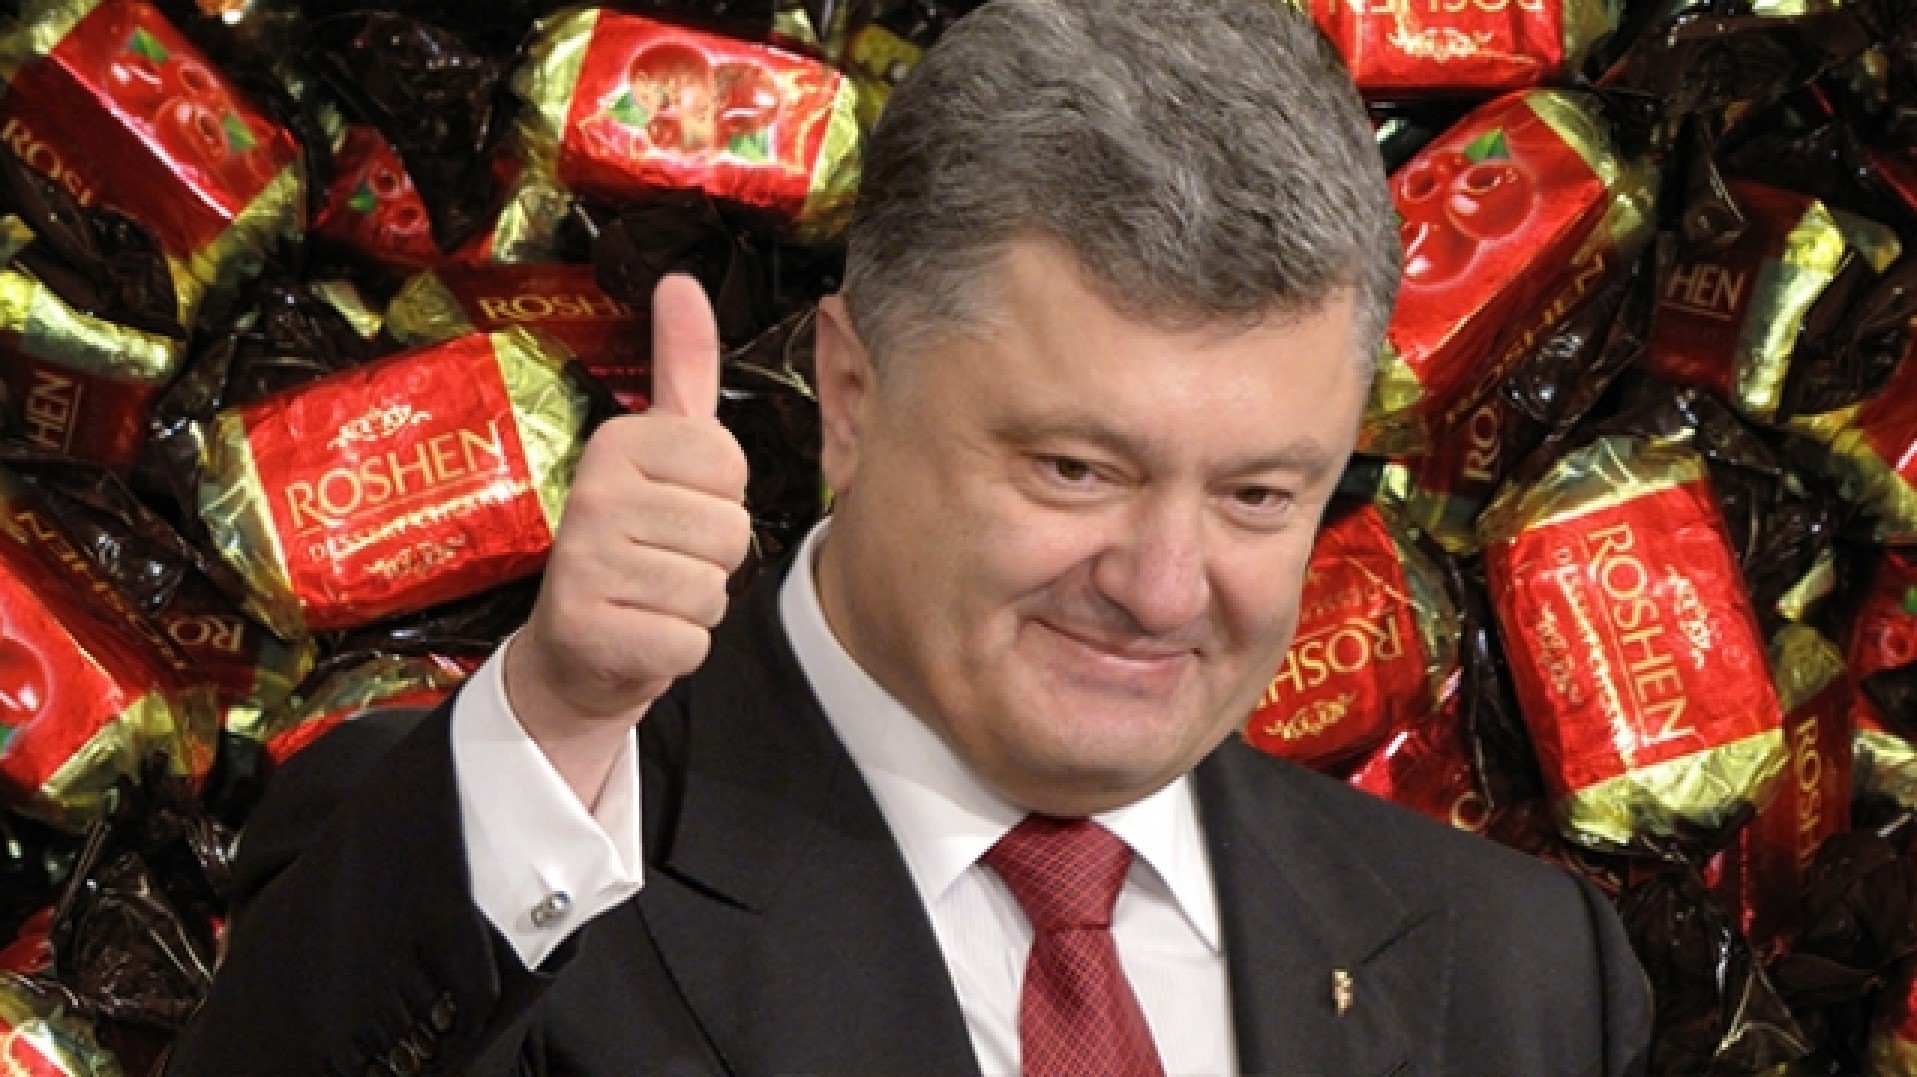 "Сникерсни" по-украински: люди заедают кризис шоколадными конфетами